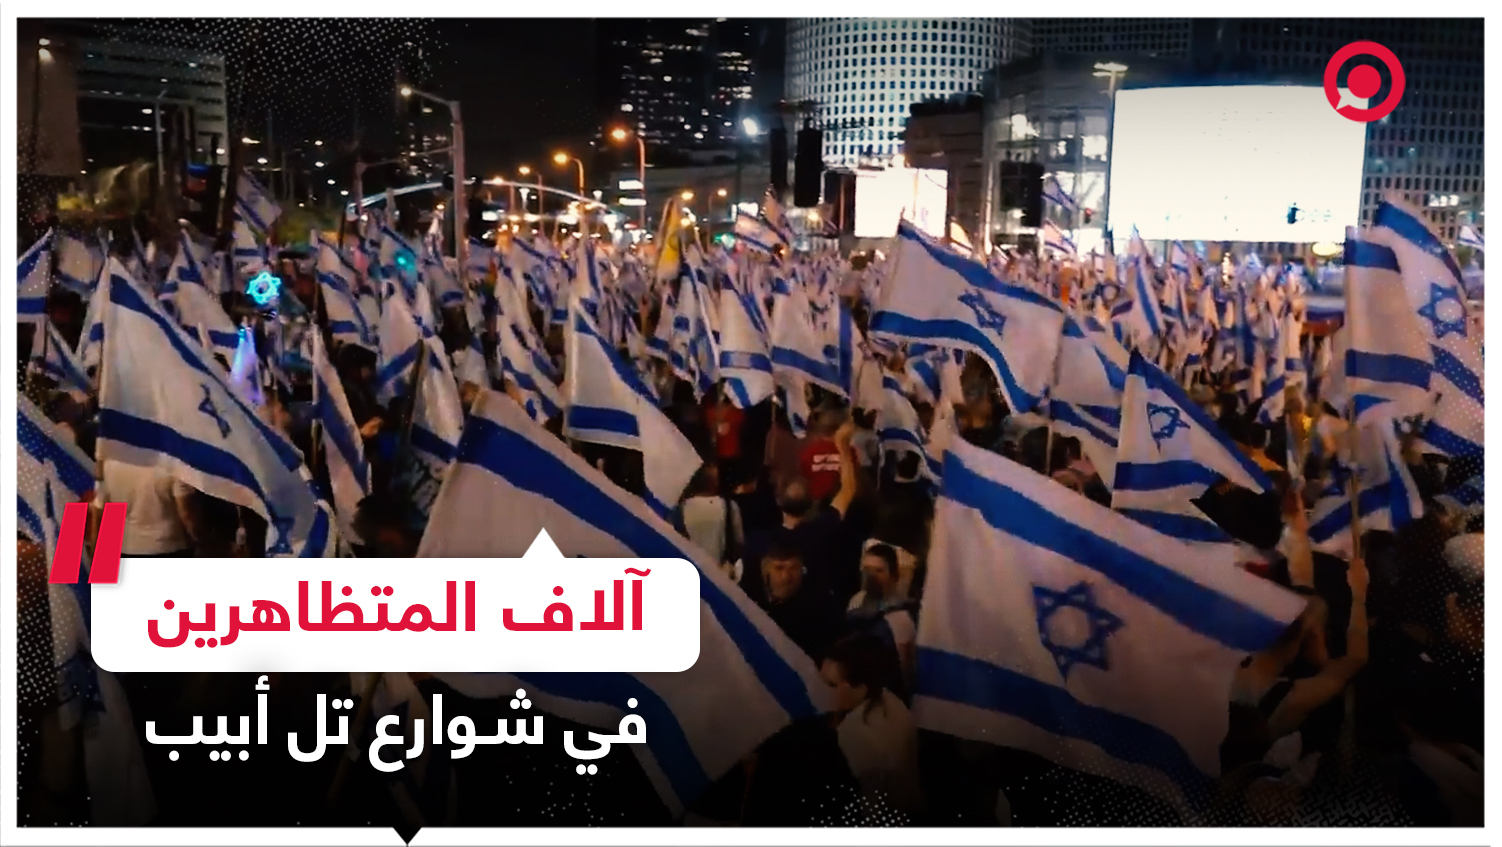 #فيديو #إسرائيل #مظاهرات #احتجاجات #الإصلاح_الق